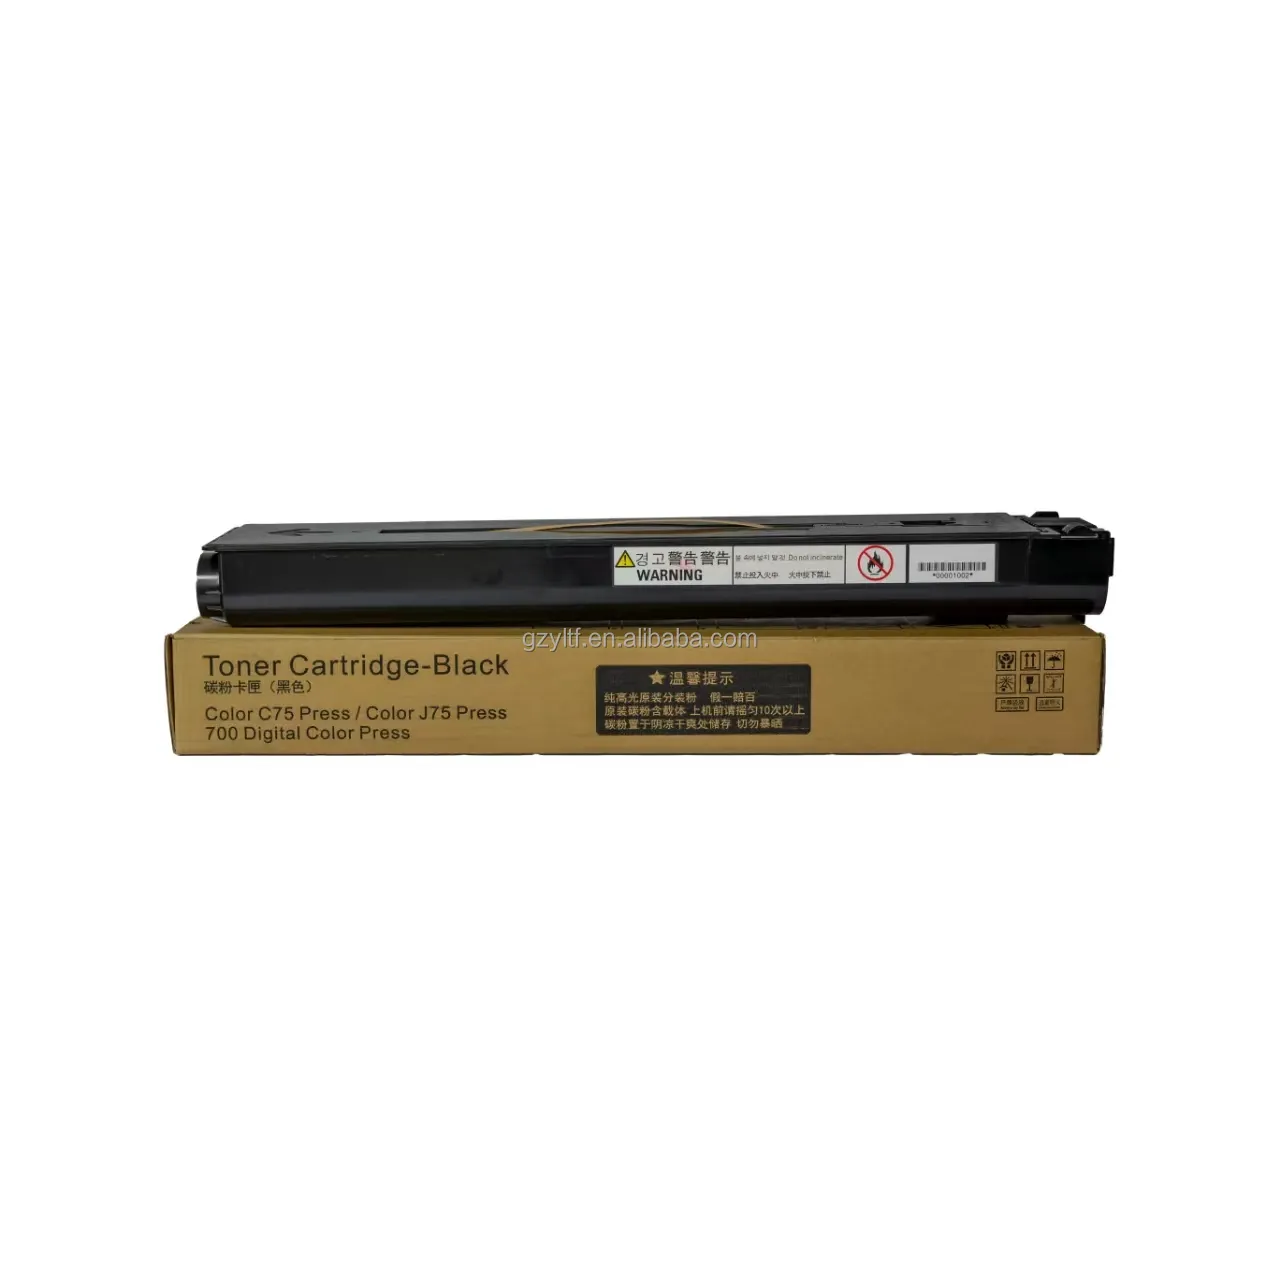 Kartrid toner warna Laser kompatibel Premium untuk suku cadang mesin fotokopi Printer xerox 560 c60 c70 700